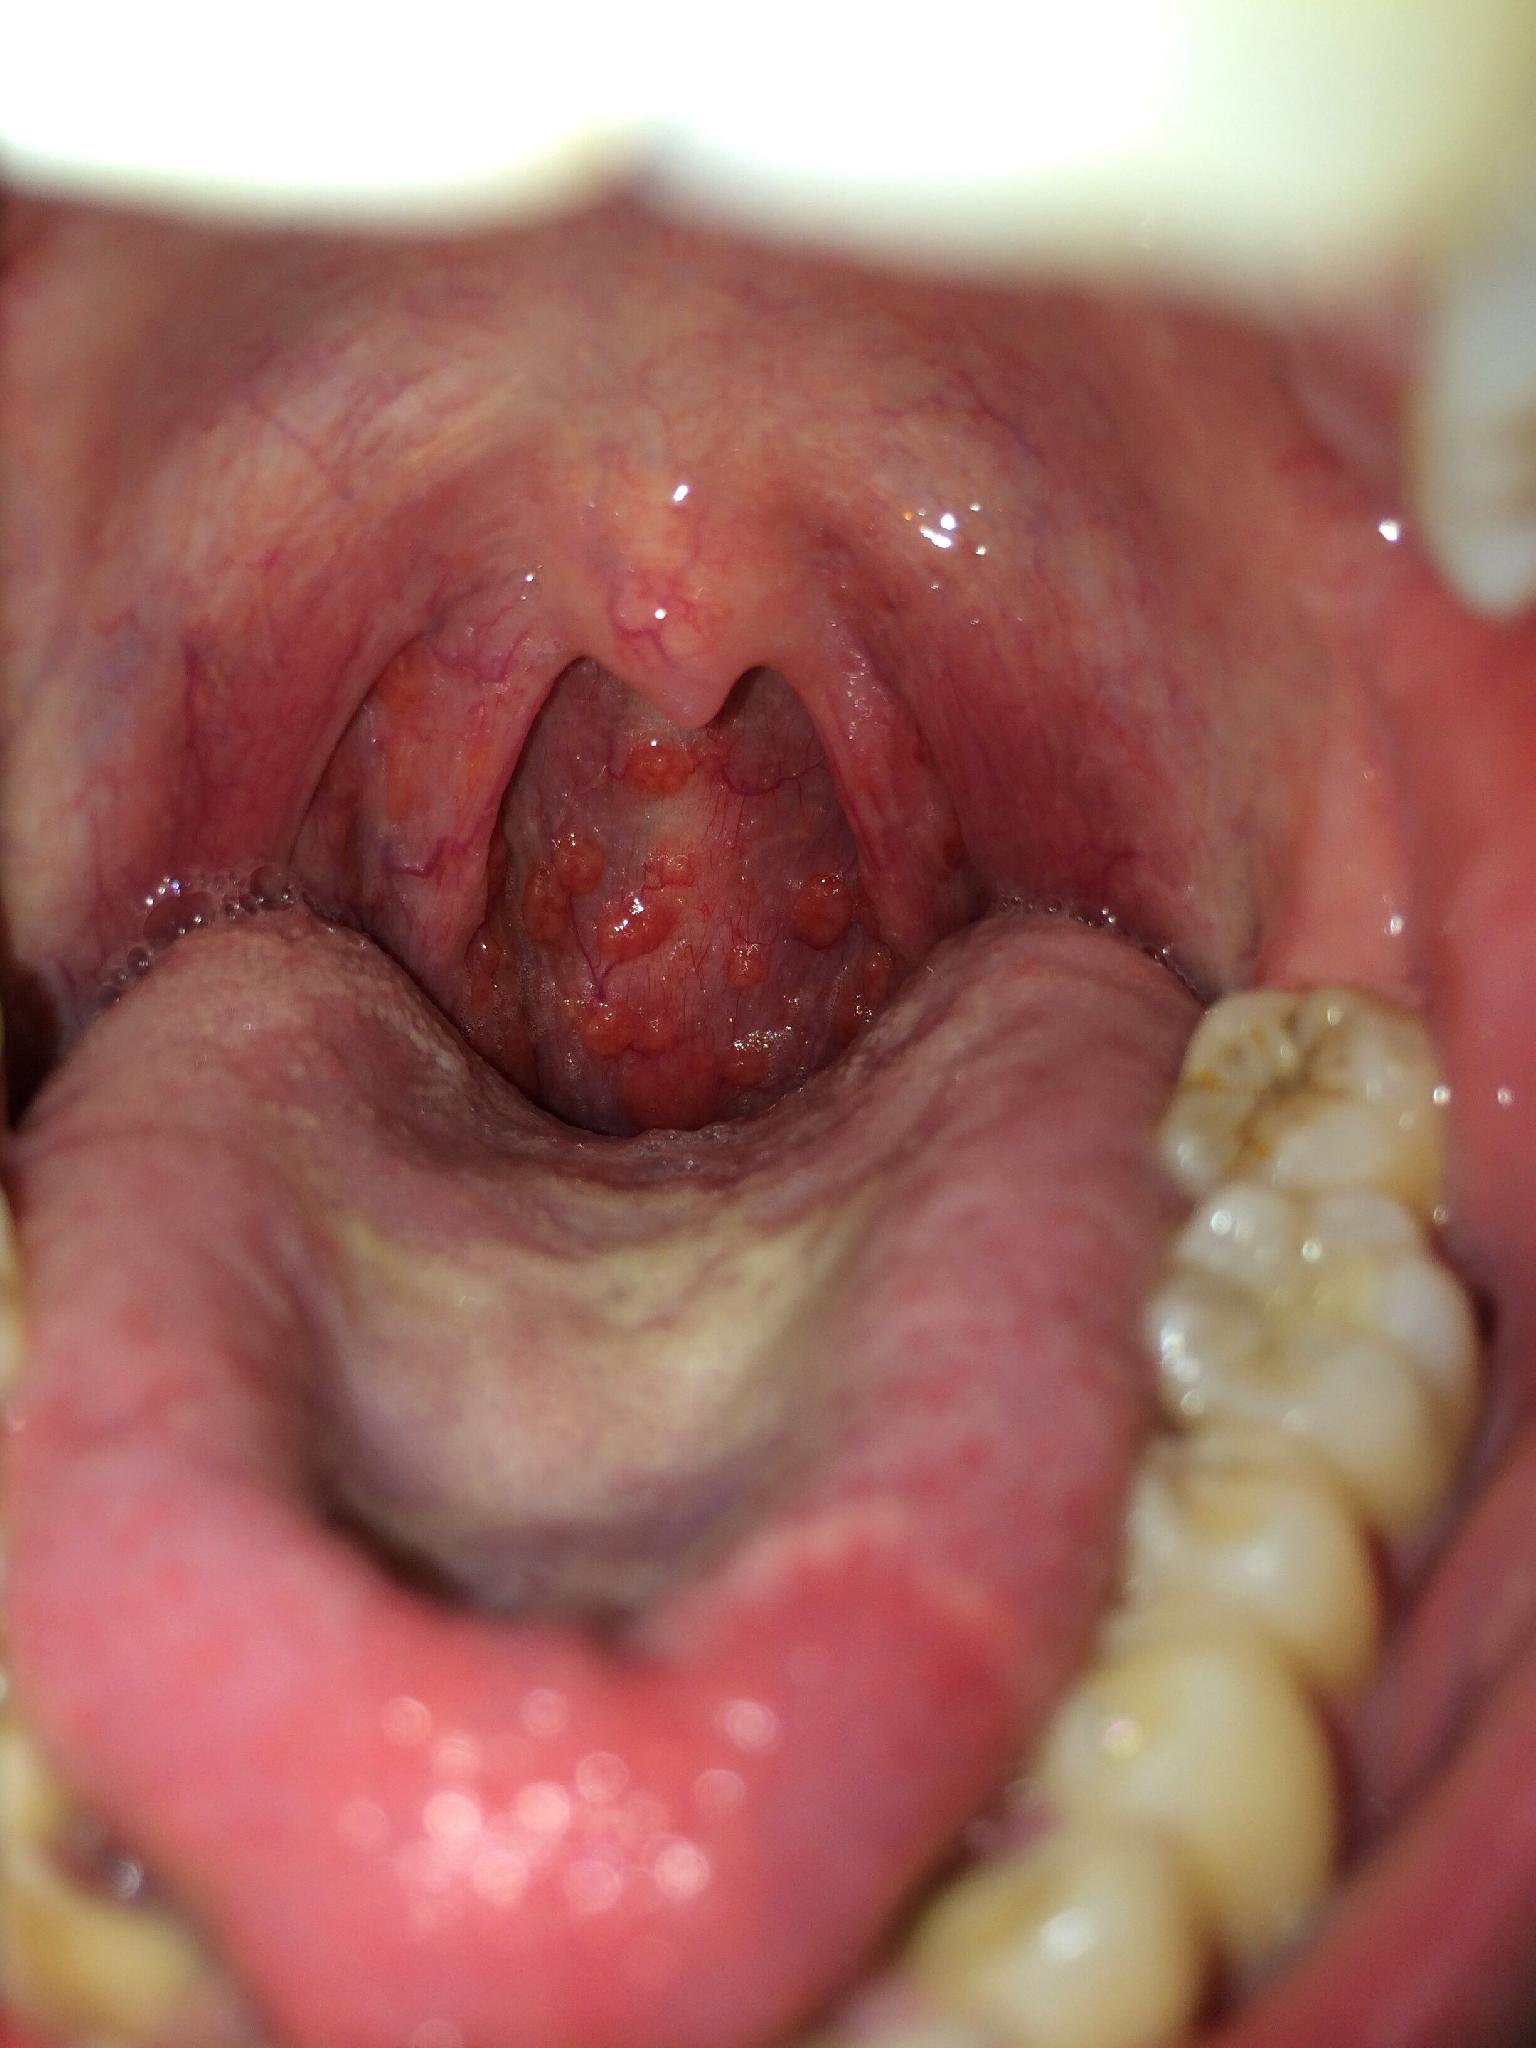 咽喉癌图片症状图片